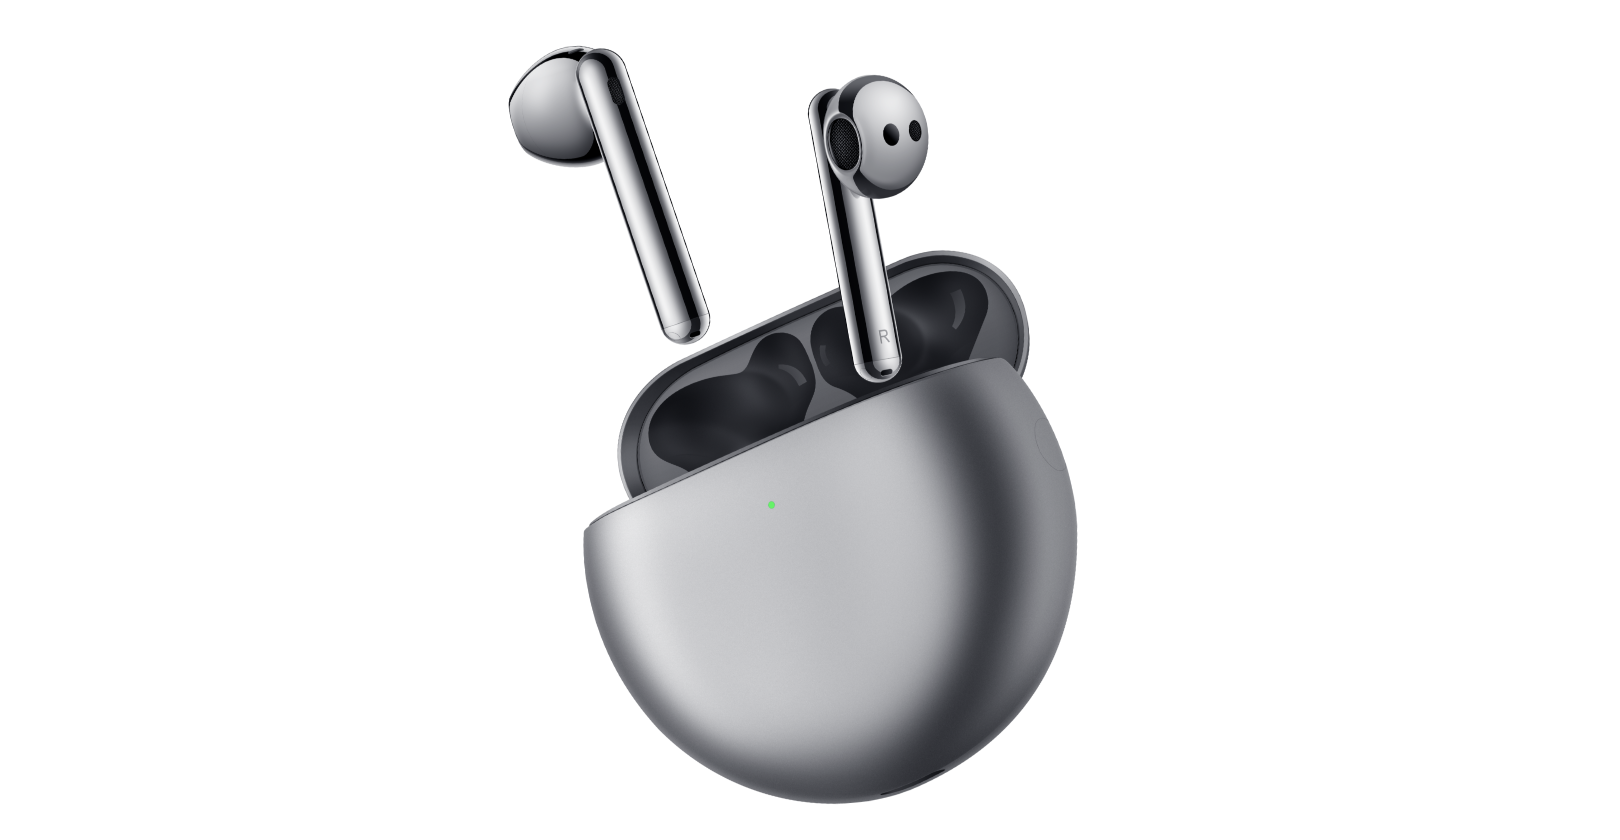 Bluetooth Kopfhörer,In-Ear Kabellose Kopfhörer,Bluetooth Headset,Sport-3D-Stereo-Kopfhörer,mit 24H Ladekästchen und Integriertem Mikrofon Auto-Pairing für Samsung/Huawei/iPhone/Airpod/Android/Apple 